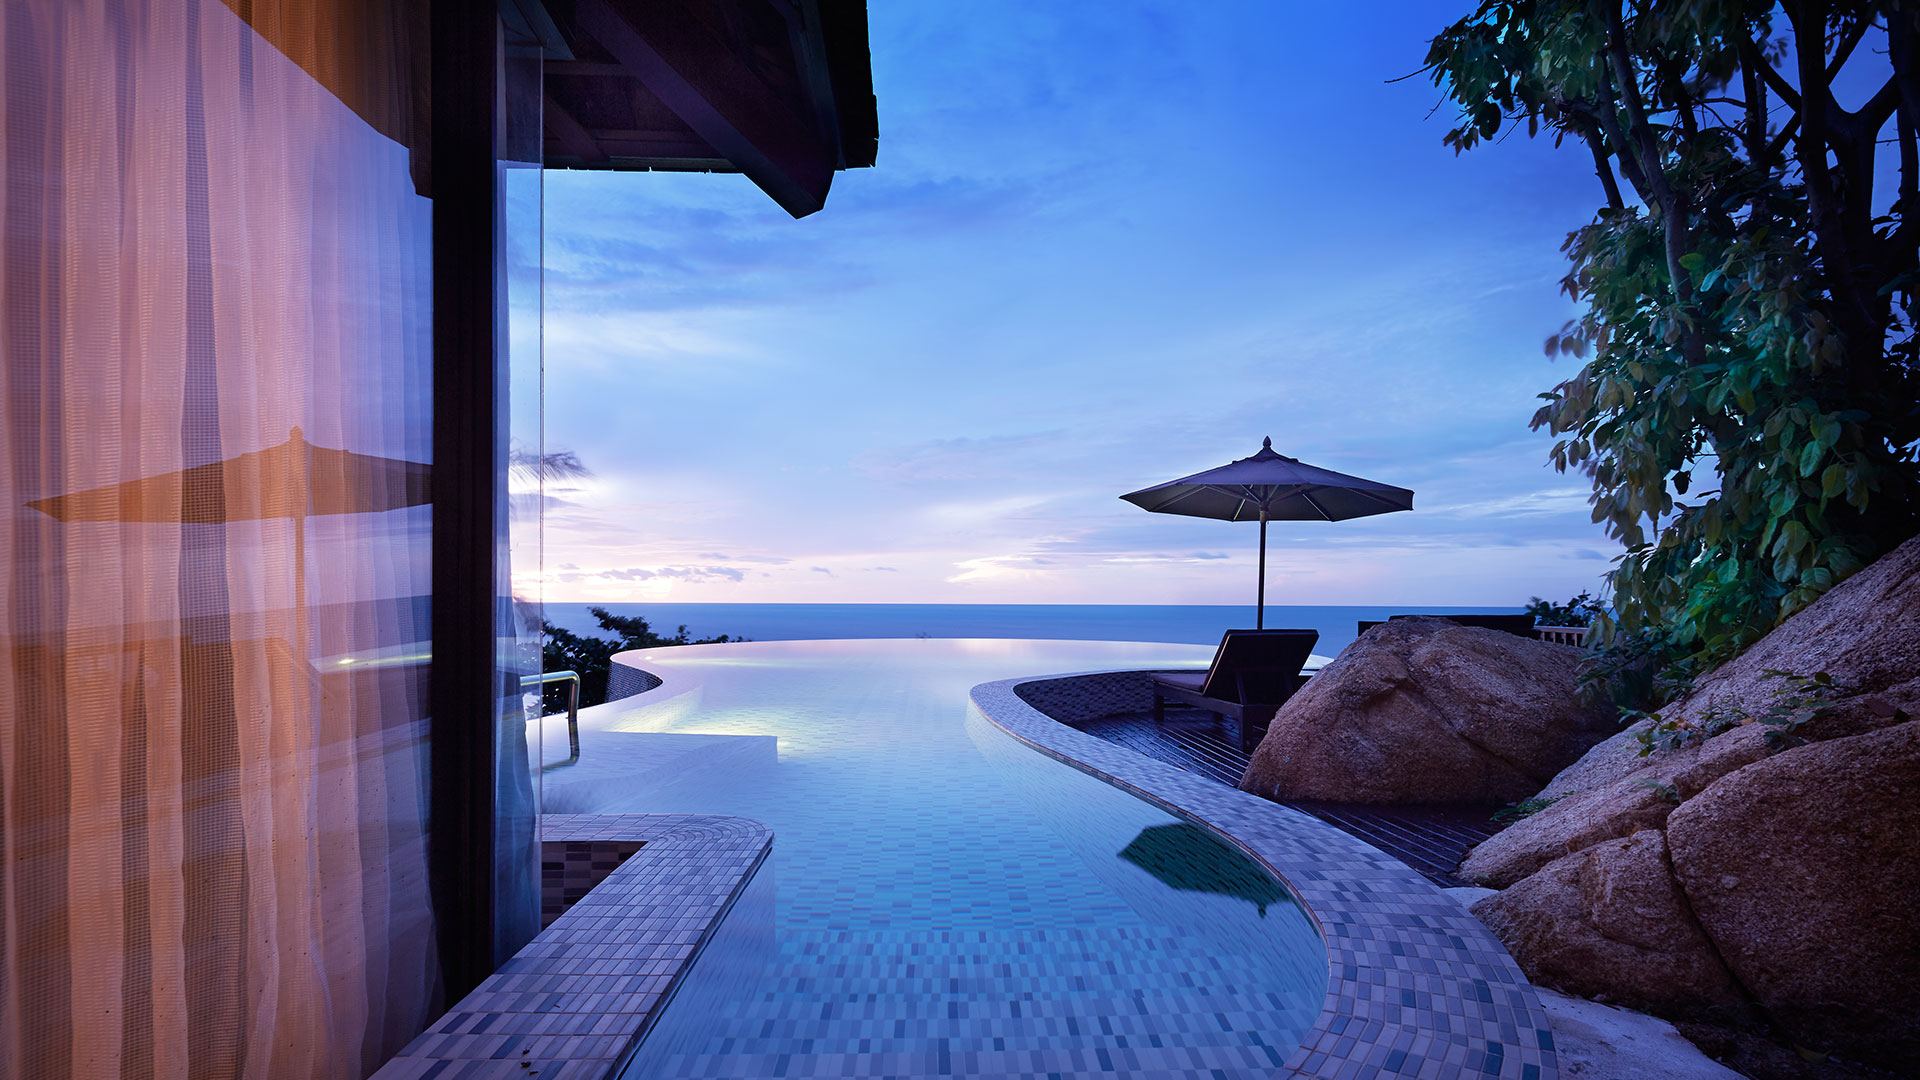 Silavadee Pool Spa Resort, Koh Samui. 